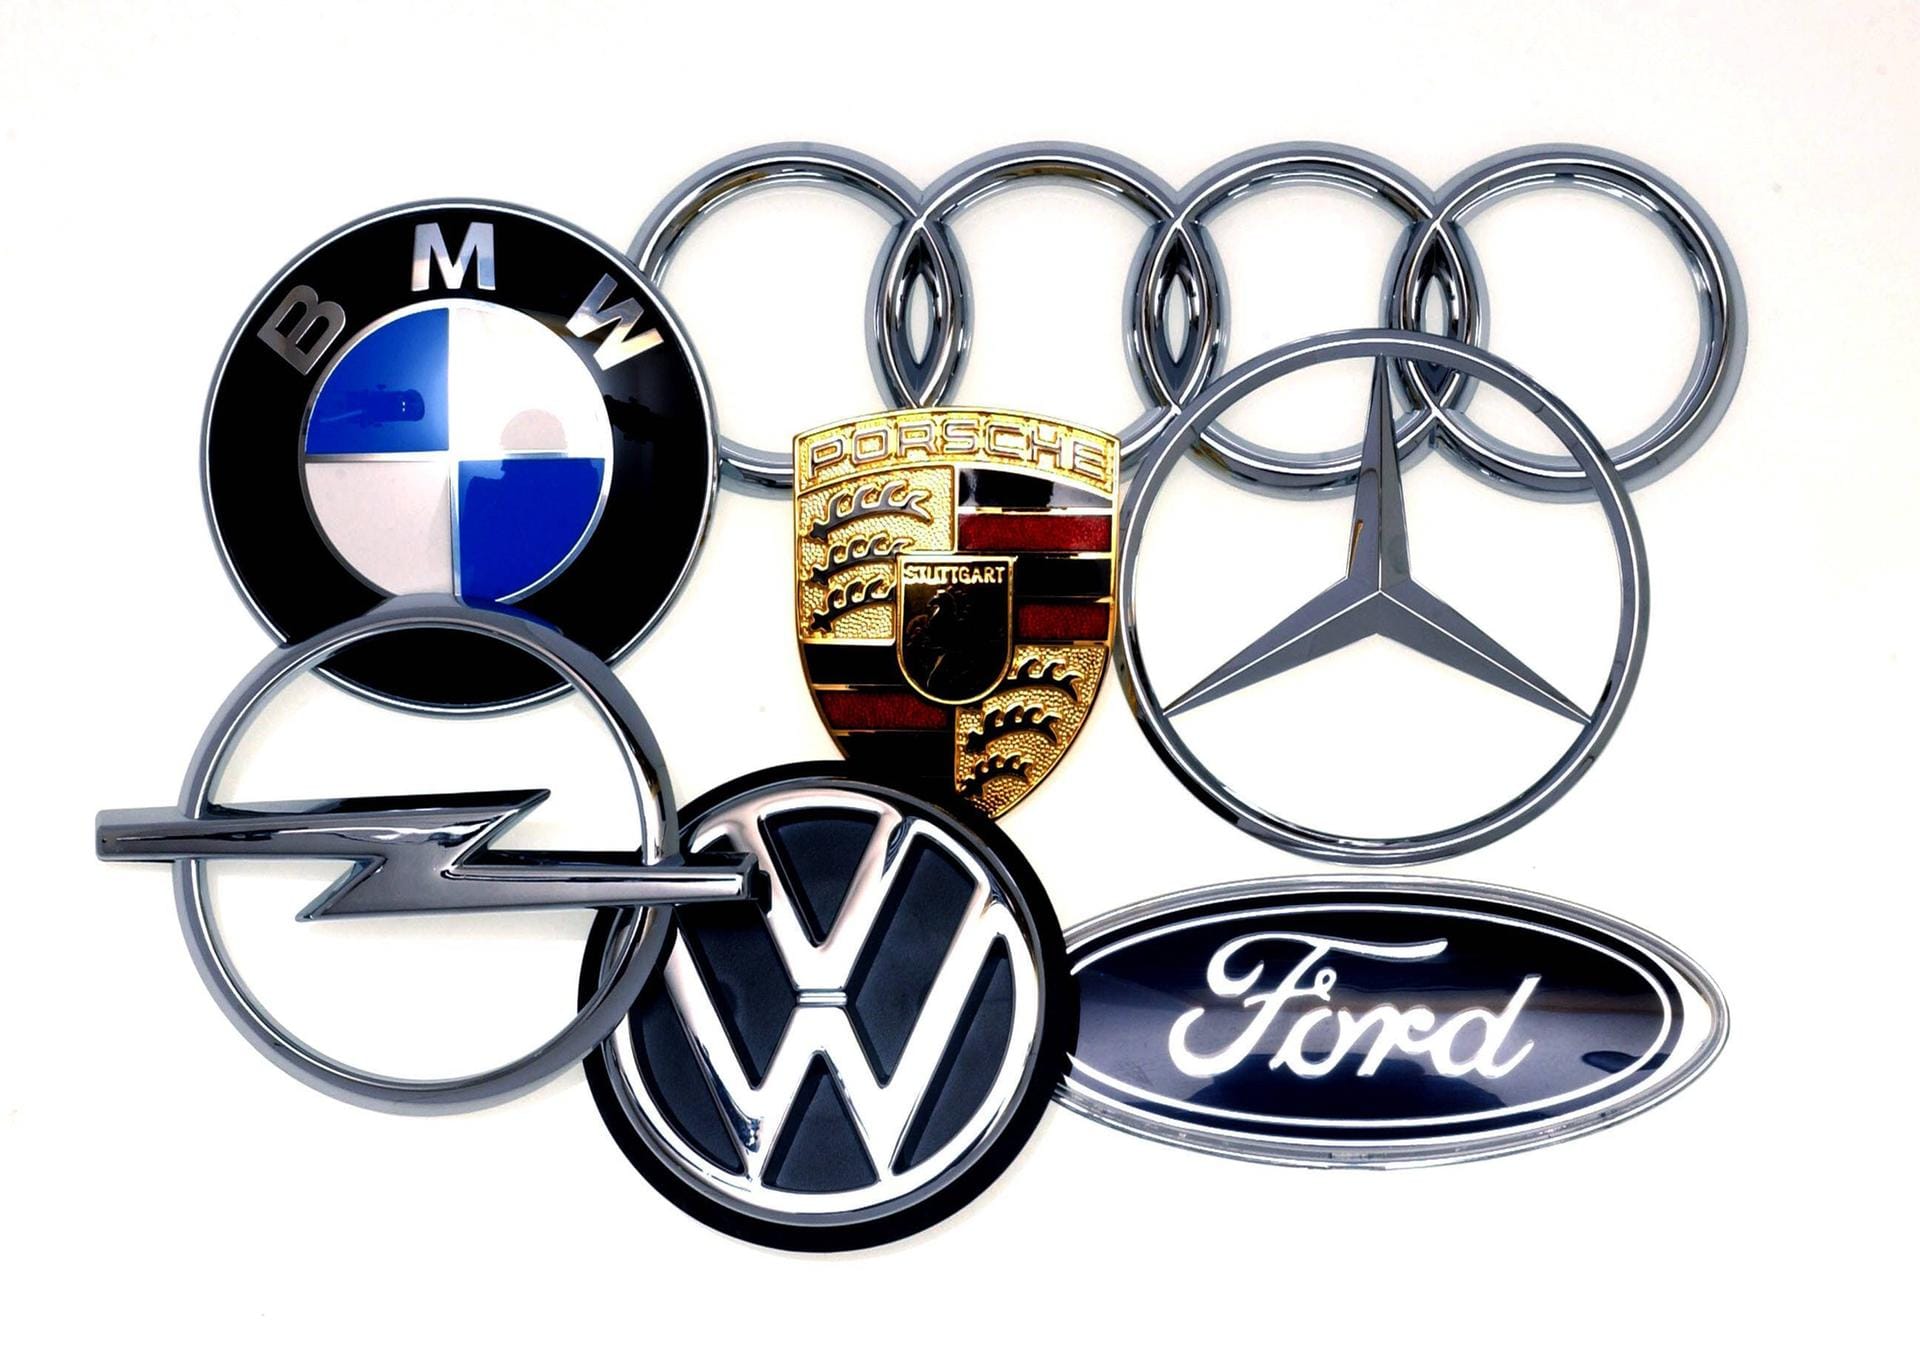 Automarken: Oft sind die bekannten Autohersteller nach ihren Gründern benannt – Opel nach Adam Opel, Ford nach Henry Ford oder Porsche nach Ferdinand Porsche. Manchmal weist der Name auch auf den Herkunft der Marke hin, wie etwa bei BMW (Bayrische Motoren Werke). Doch hinter einigen bekannten Marken verbirgt sich eine interessante Geschichte.